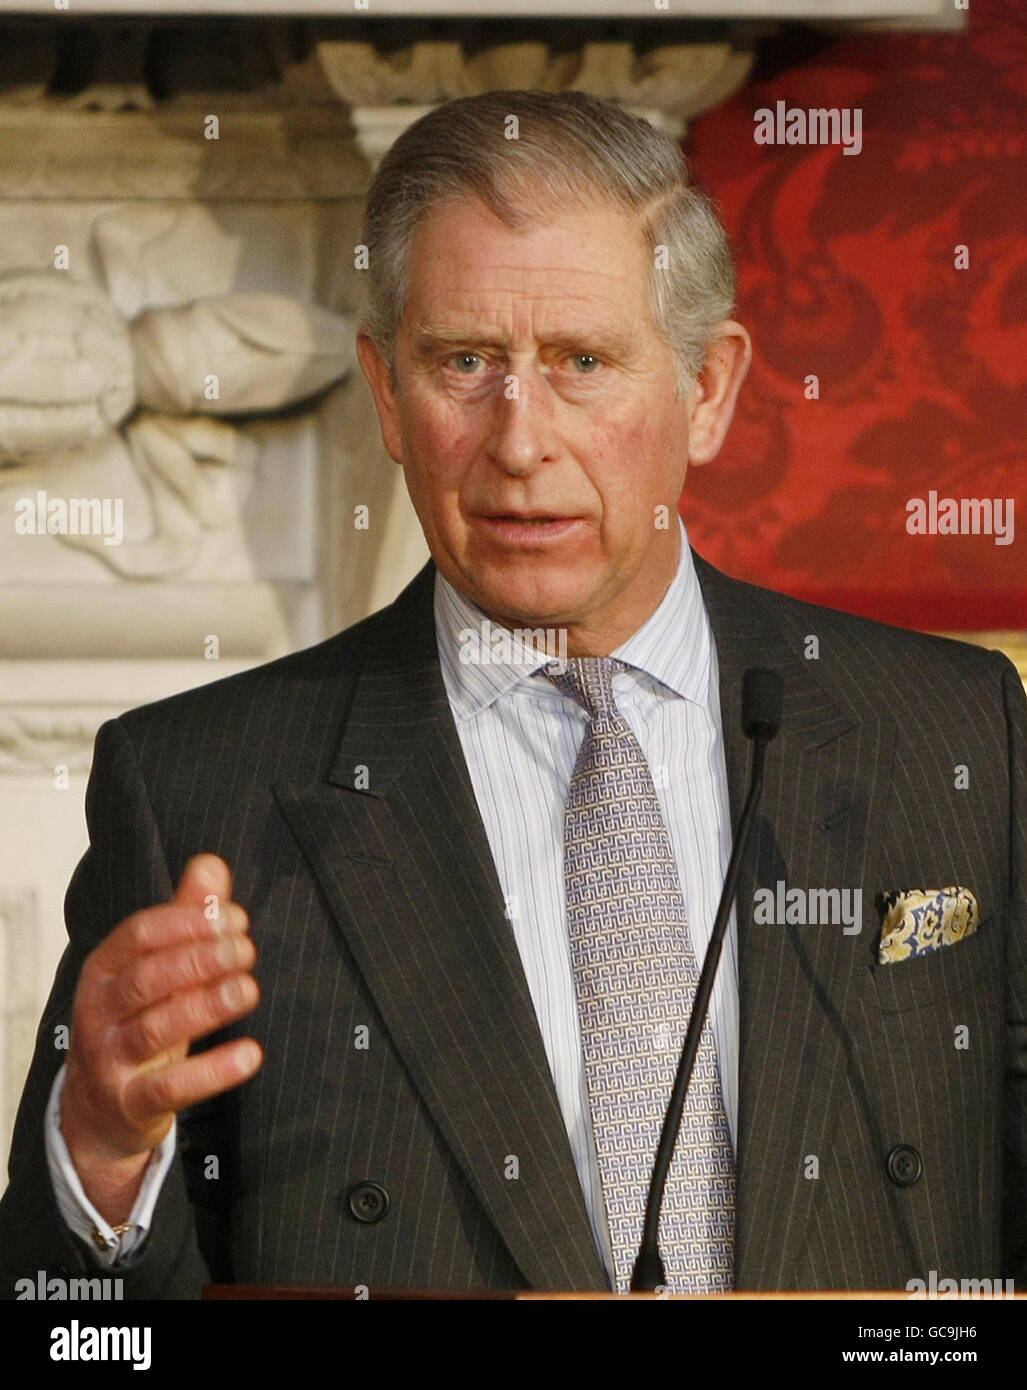 Der Prinz von Wales spricht bei der jährlichen Konferenz der Prince's Foundation for the Built Environment im St. James' Palace in London zu den Delegierten. Stockfoto